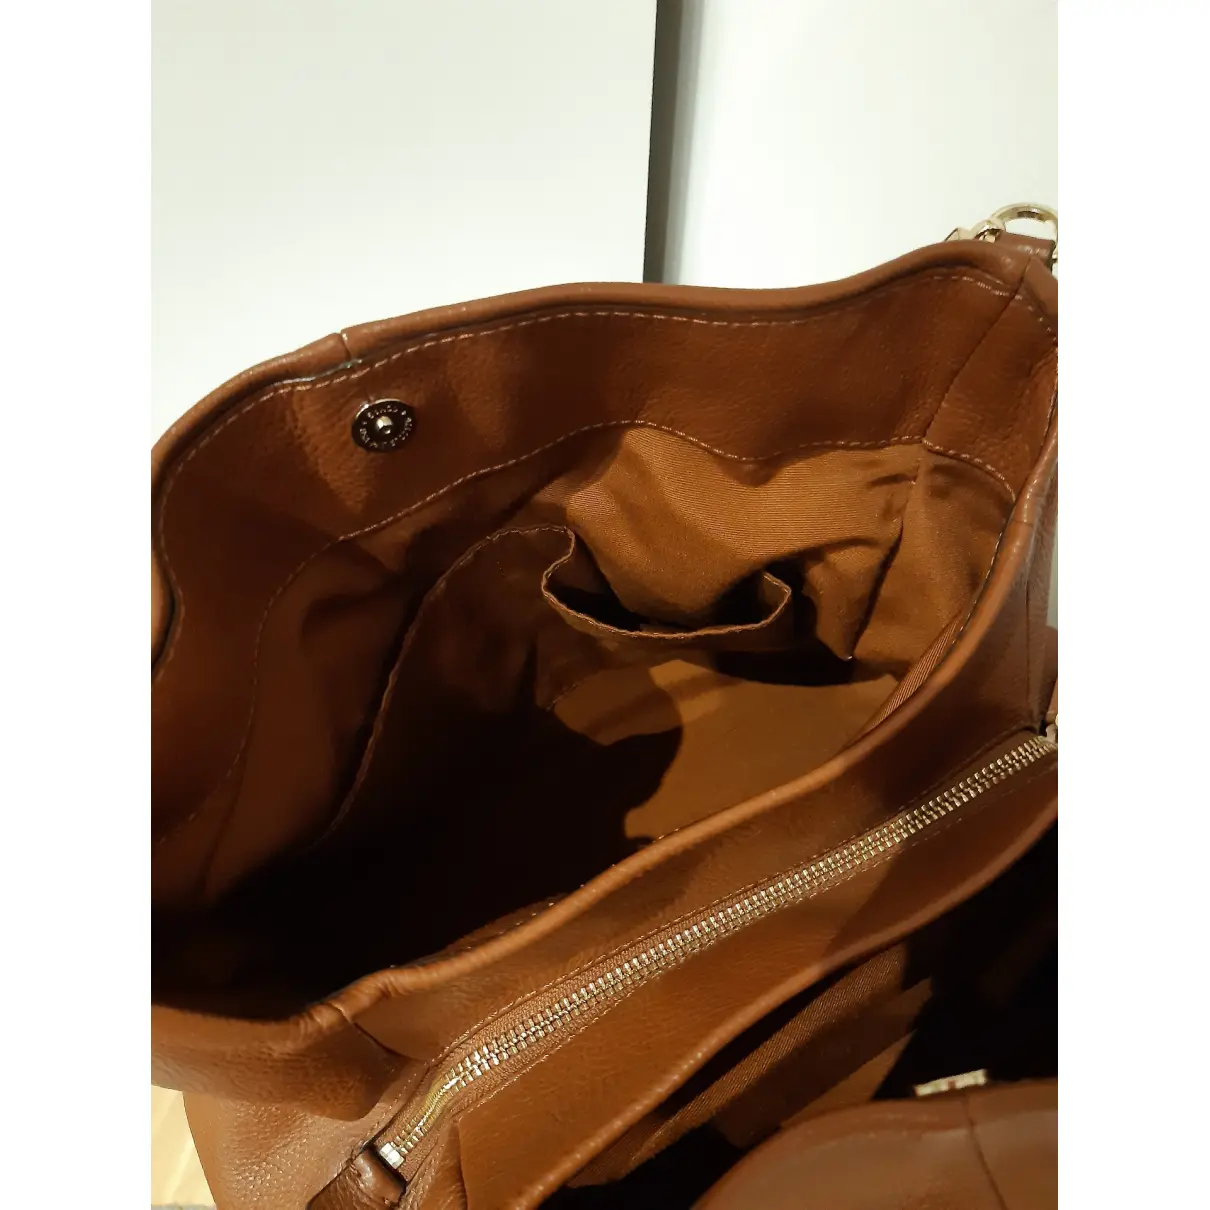 Madison Phoebe leather handbag Coach